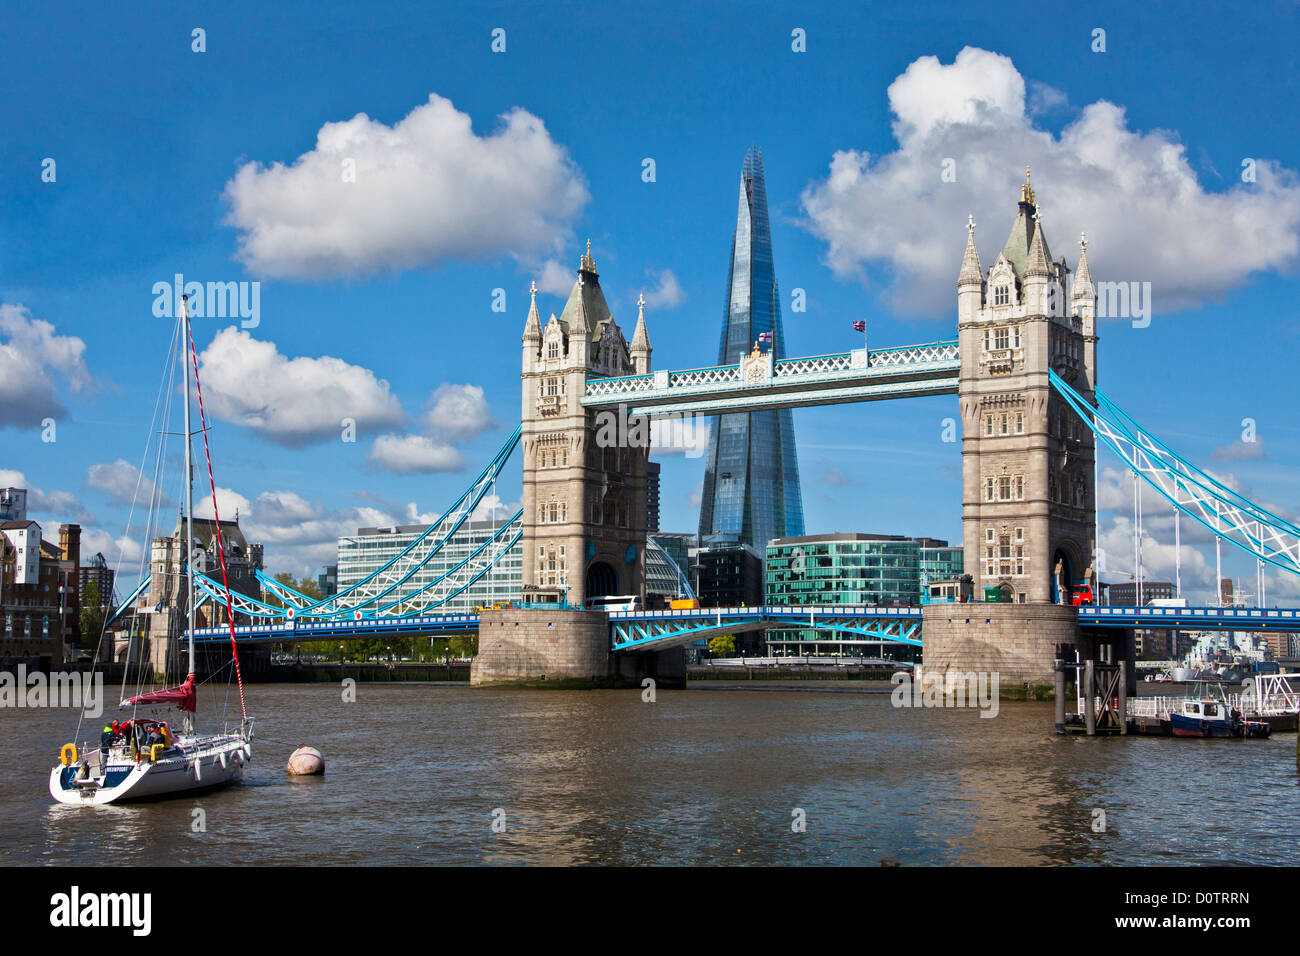 UK-Großbritannien-Europa Reisen Urlaub England London City Tower Bridge Brücke Shard-Turm-Architektur-Wolkenkratzer Stockfoto